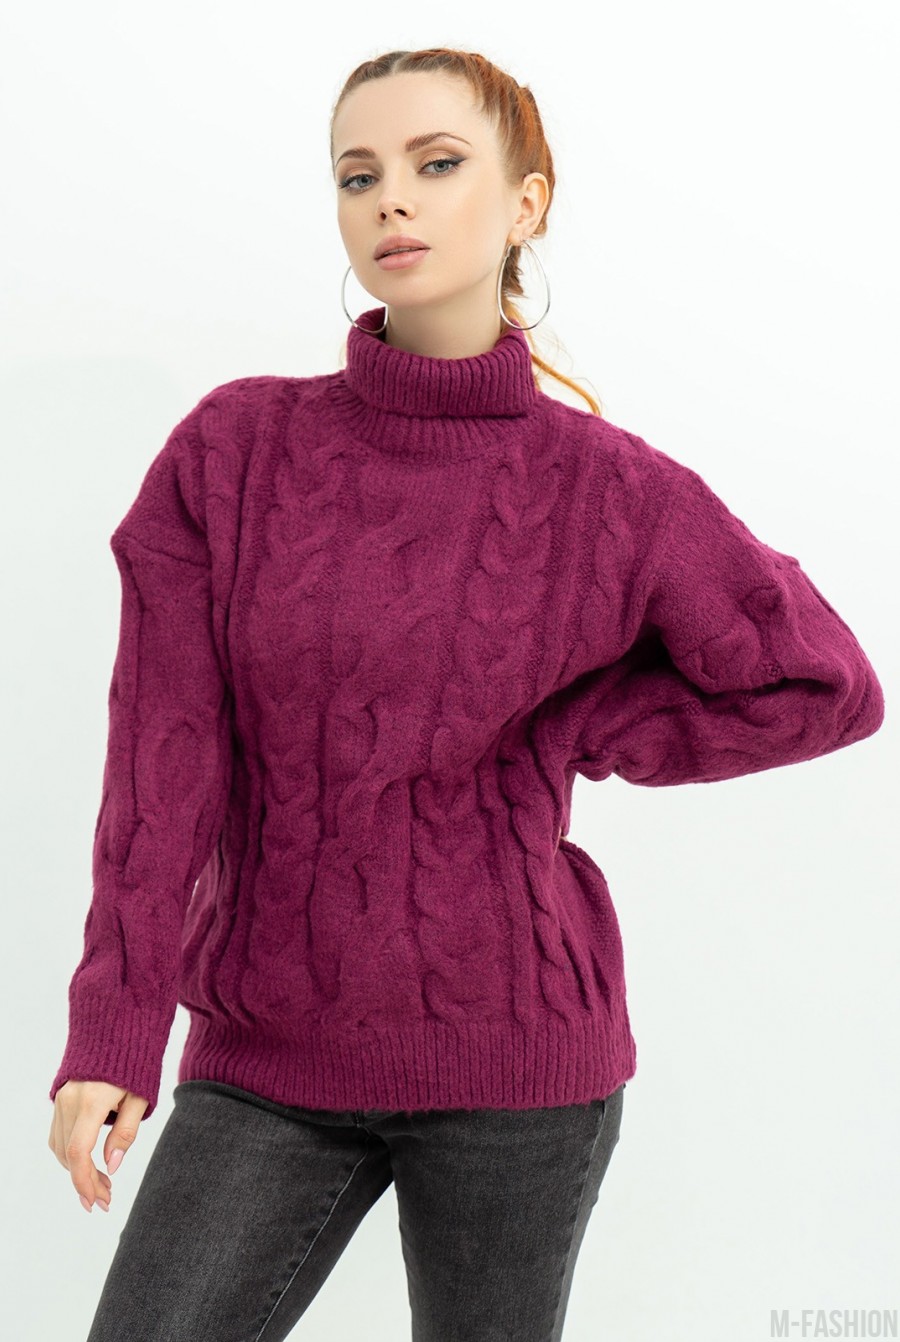 Бордовый шерстяной свитер с объемным декором - Фото 1